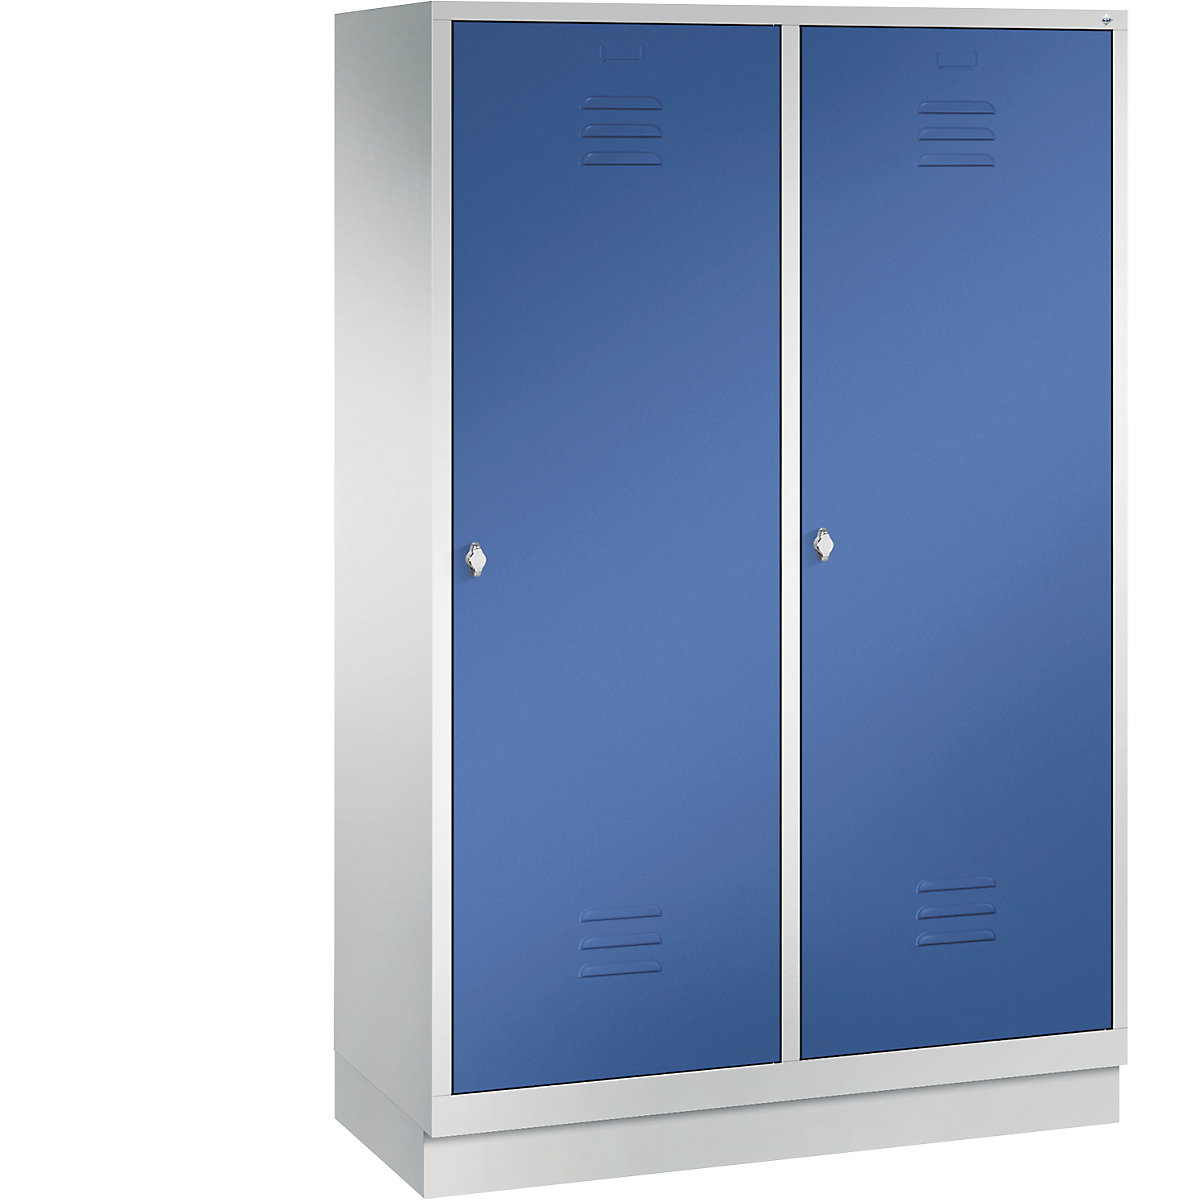 Šatní skříň se soklem CLASSIC s dveřmi přes 2 oddíly – C+P, 4 oddíly, šířka oddílu 300 mm, světlá šedá / enciánová modrá